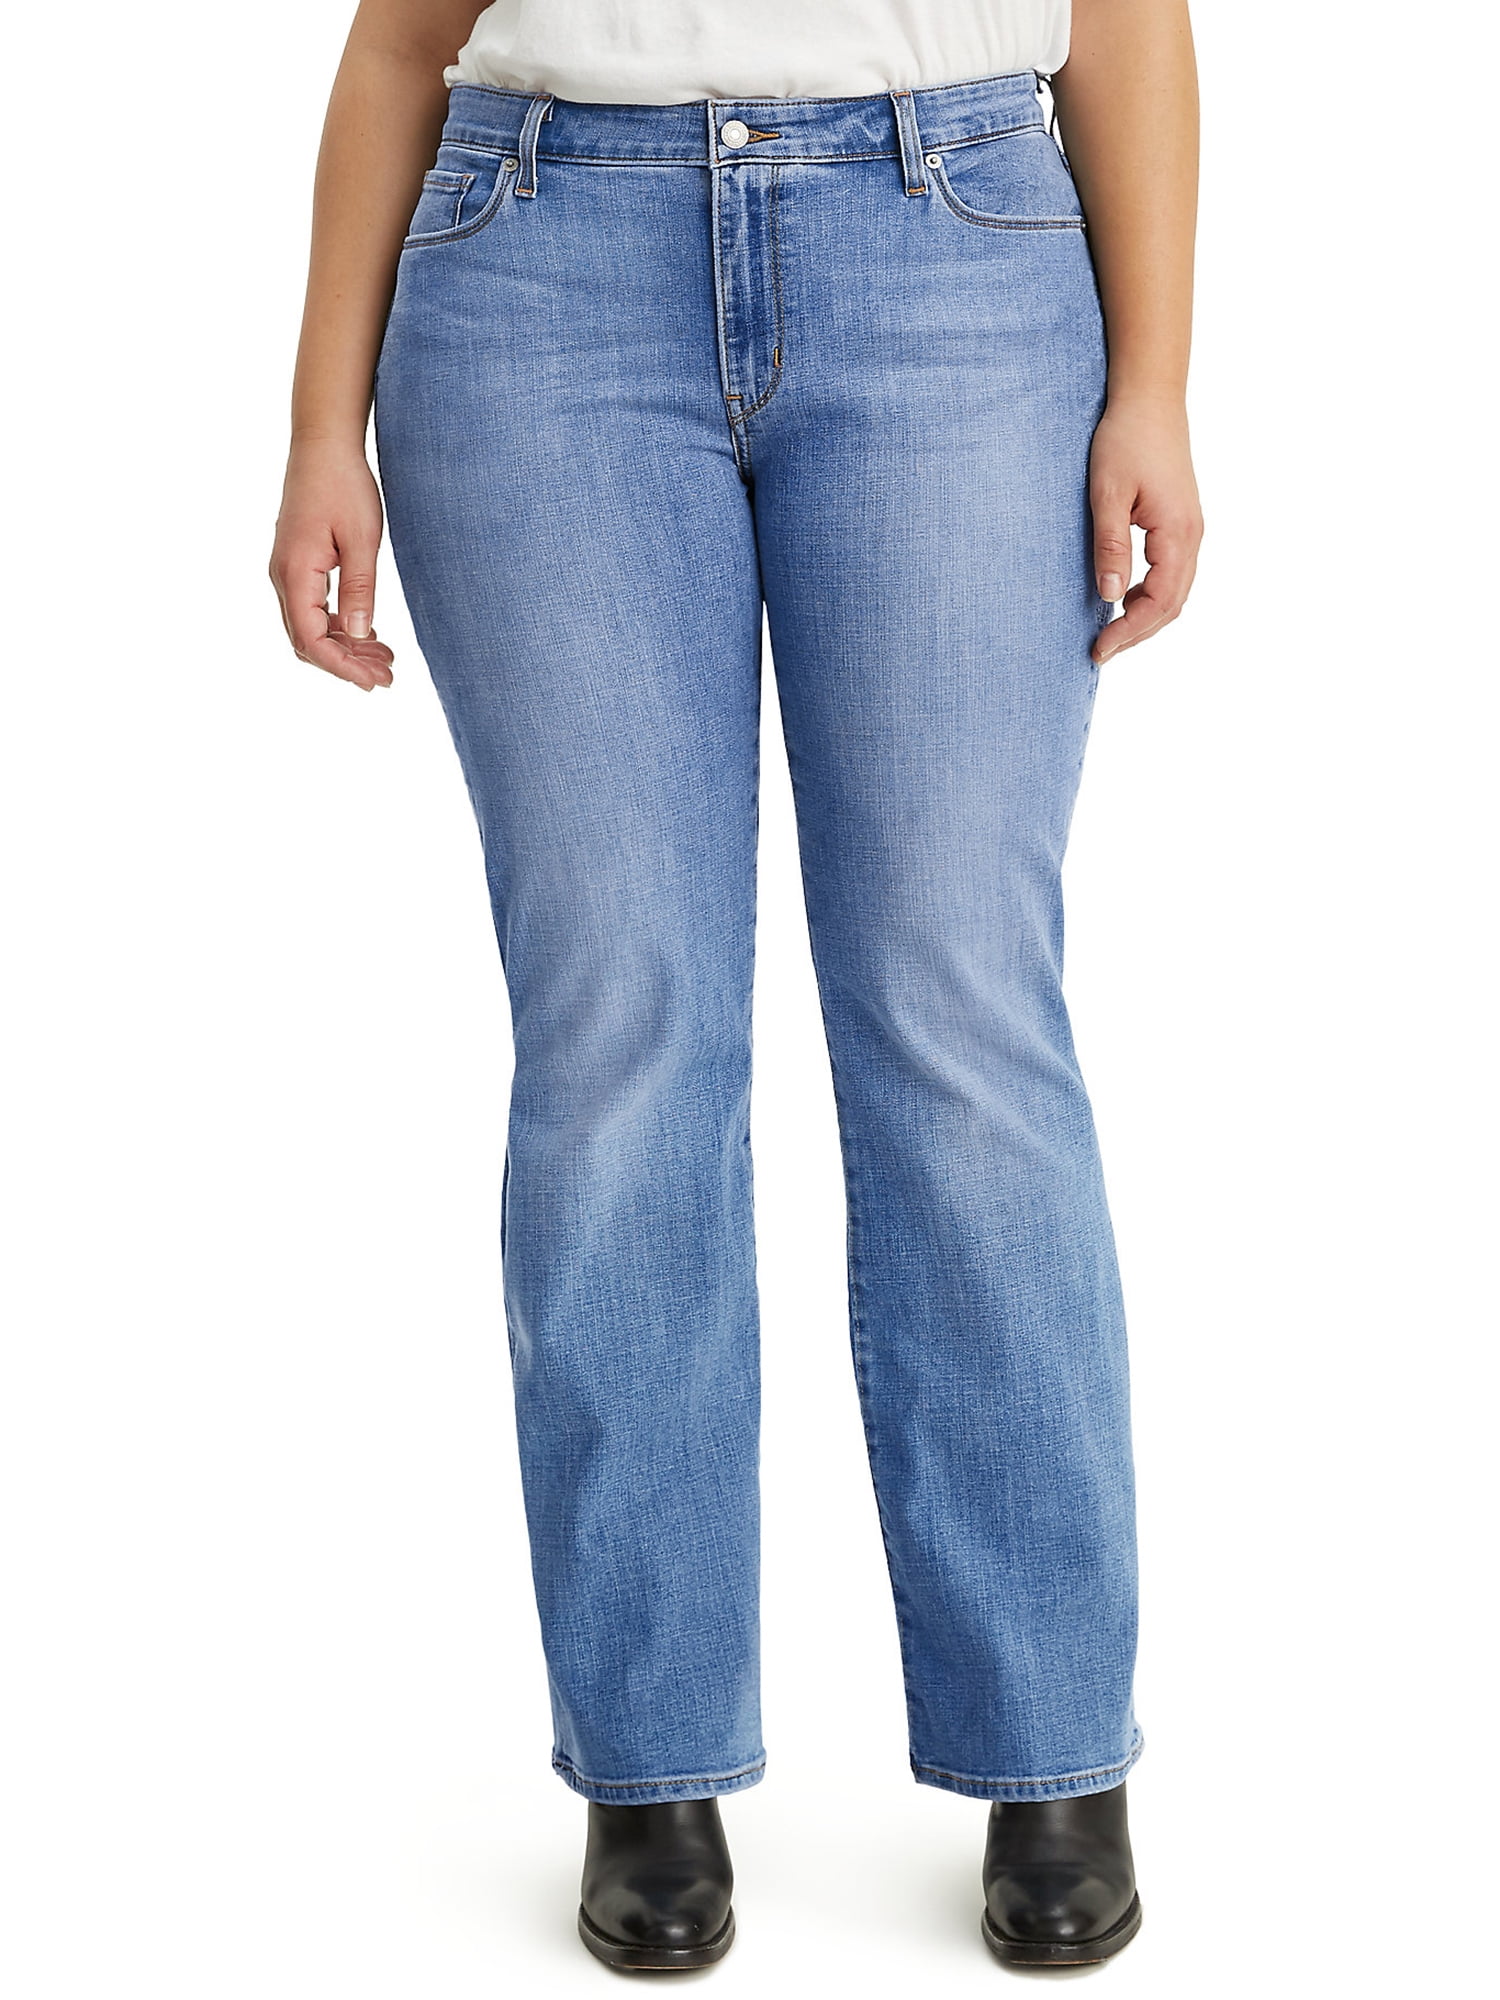 Levi's Women's Plus Size 415 Classic Bootcut Jeans - Walmart.com